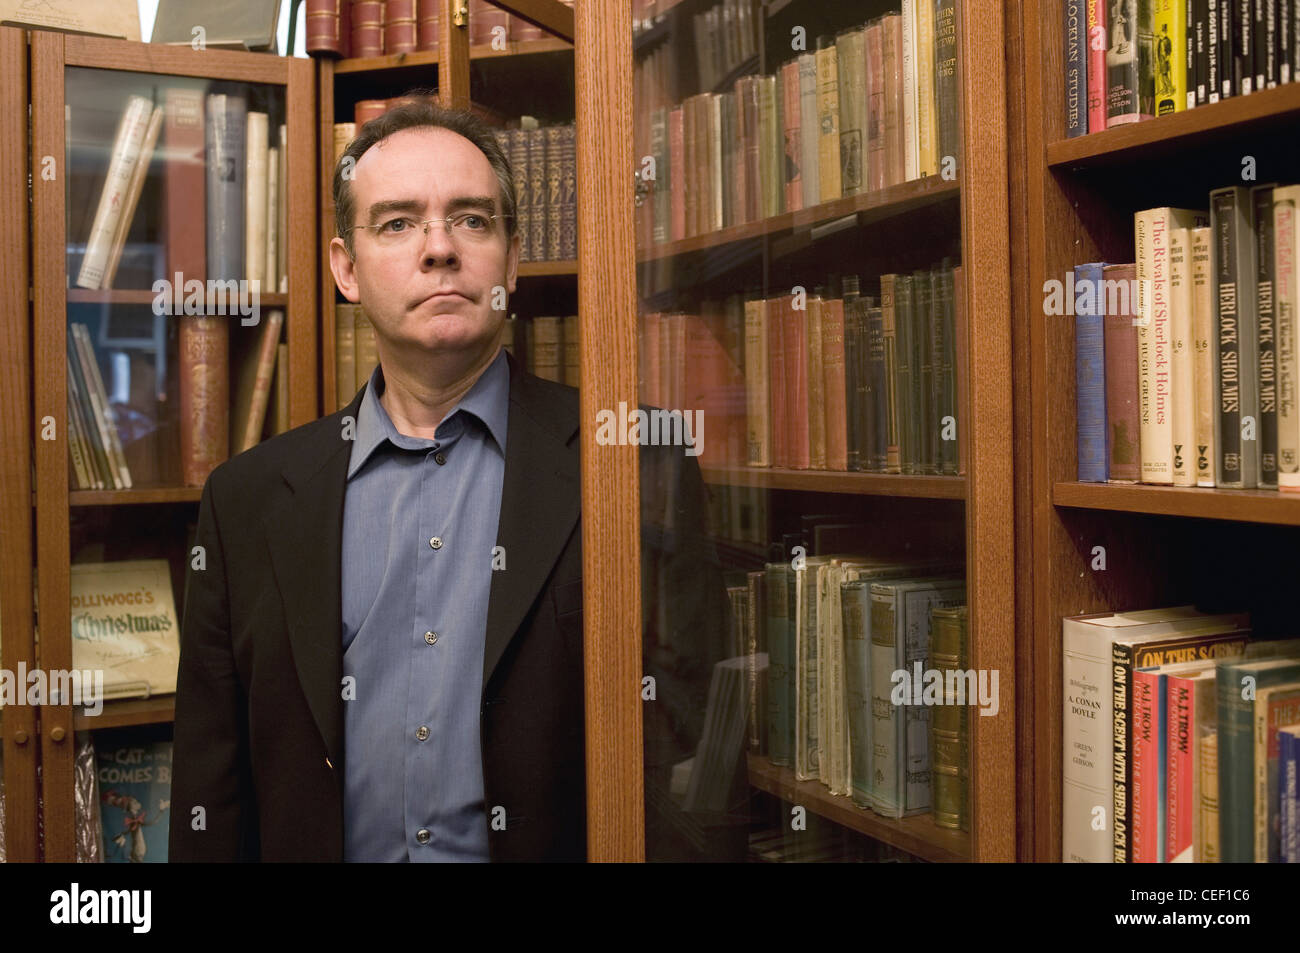 Nigel Williams librairie à Charing Cross, où il vend des livres rares. Banque D'Images